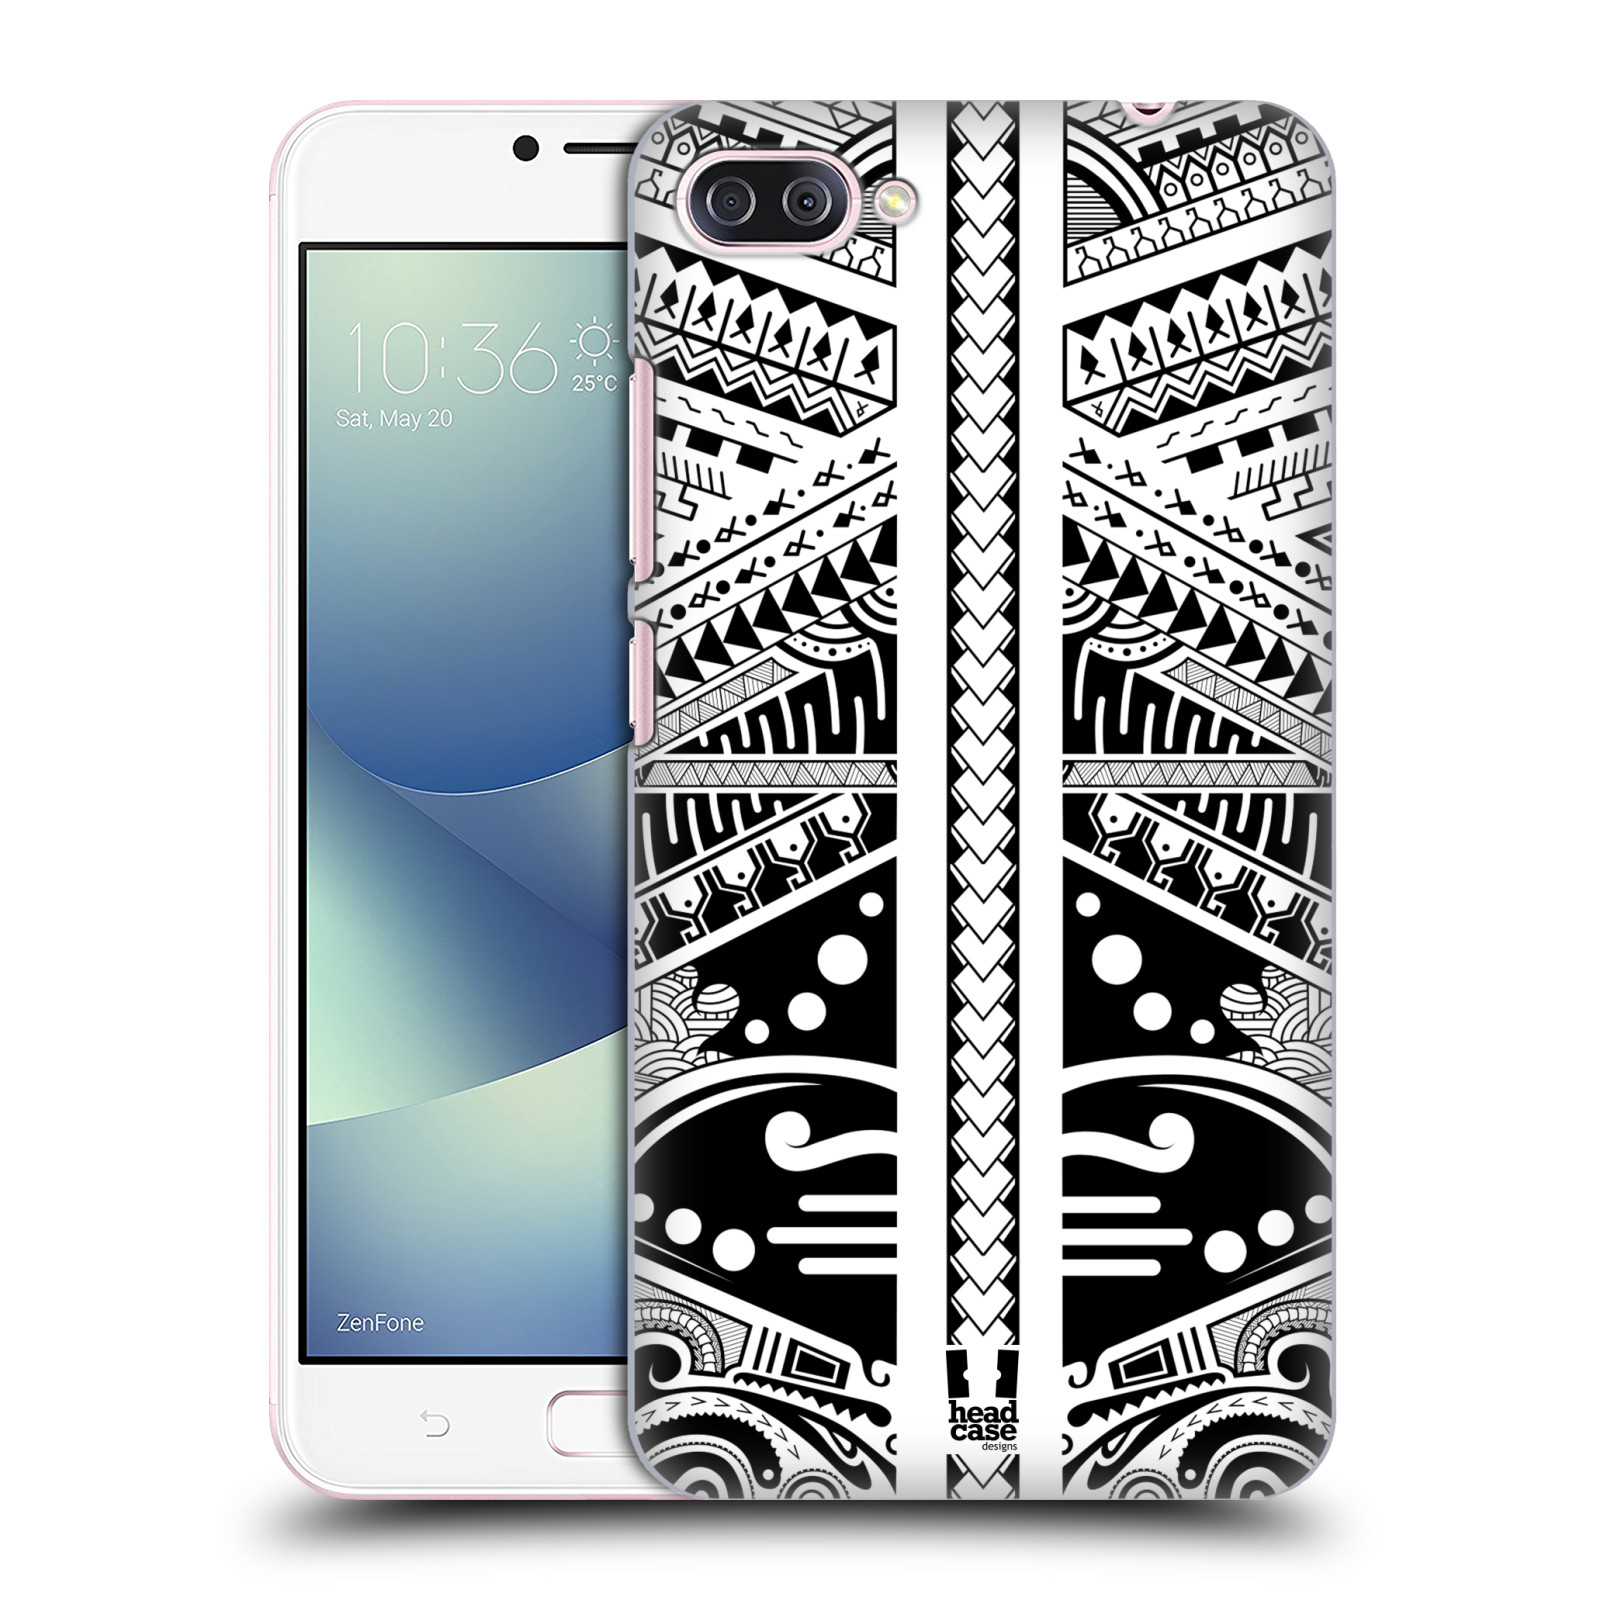 HEAD CASE plastový obal na mobil Asus Zenfone 4 MAX ZC554KL vzor Maorské tetování motivy černá a bílá POLYNÉZIE